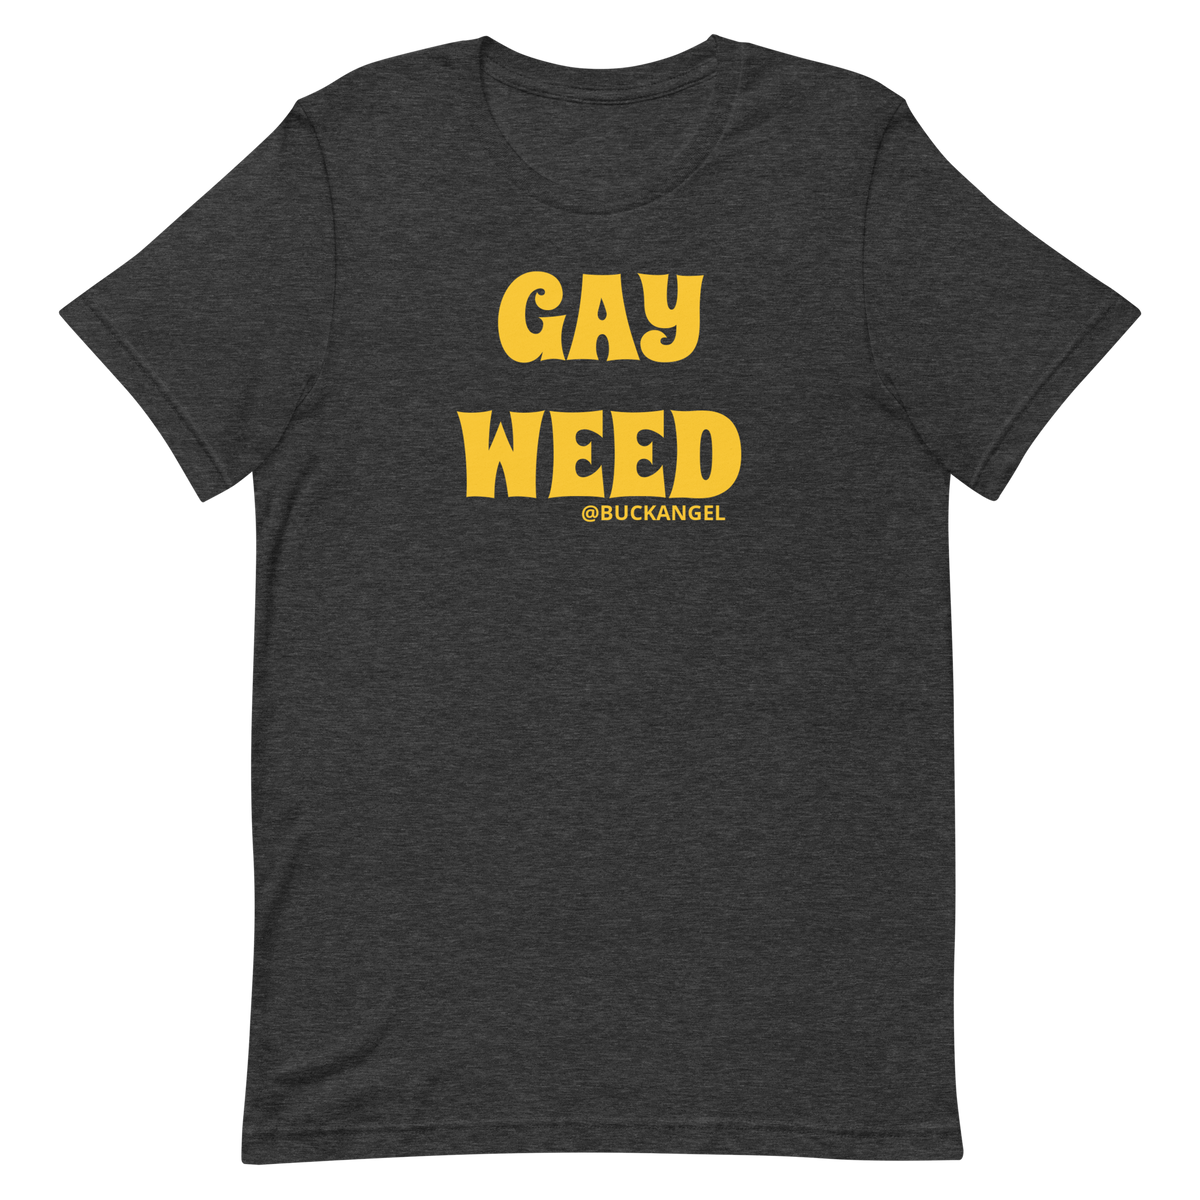 Tee Gay Weed -Buck Angel